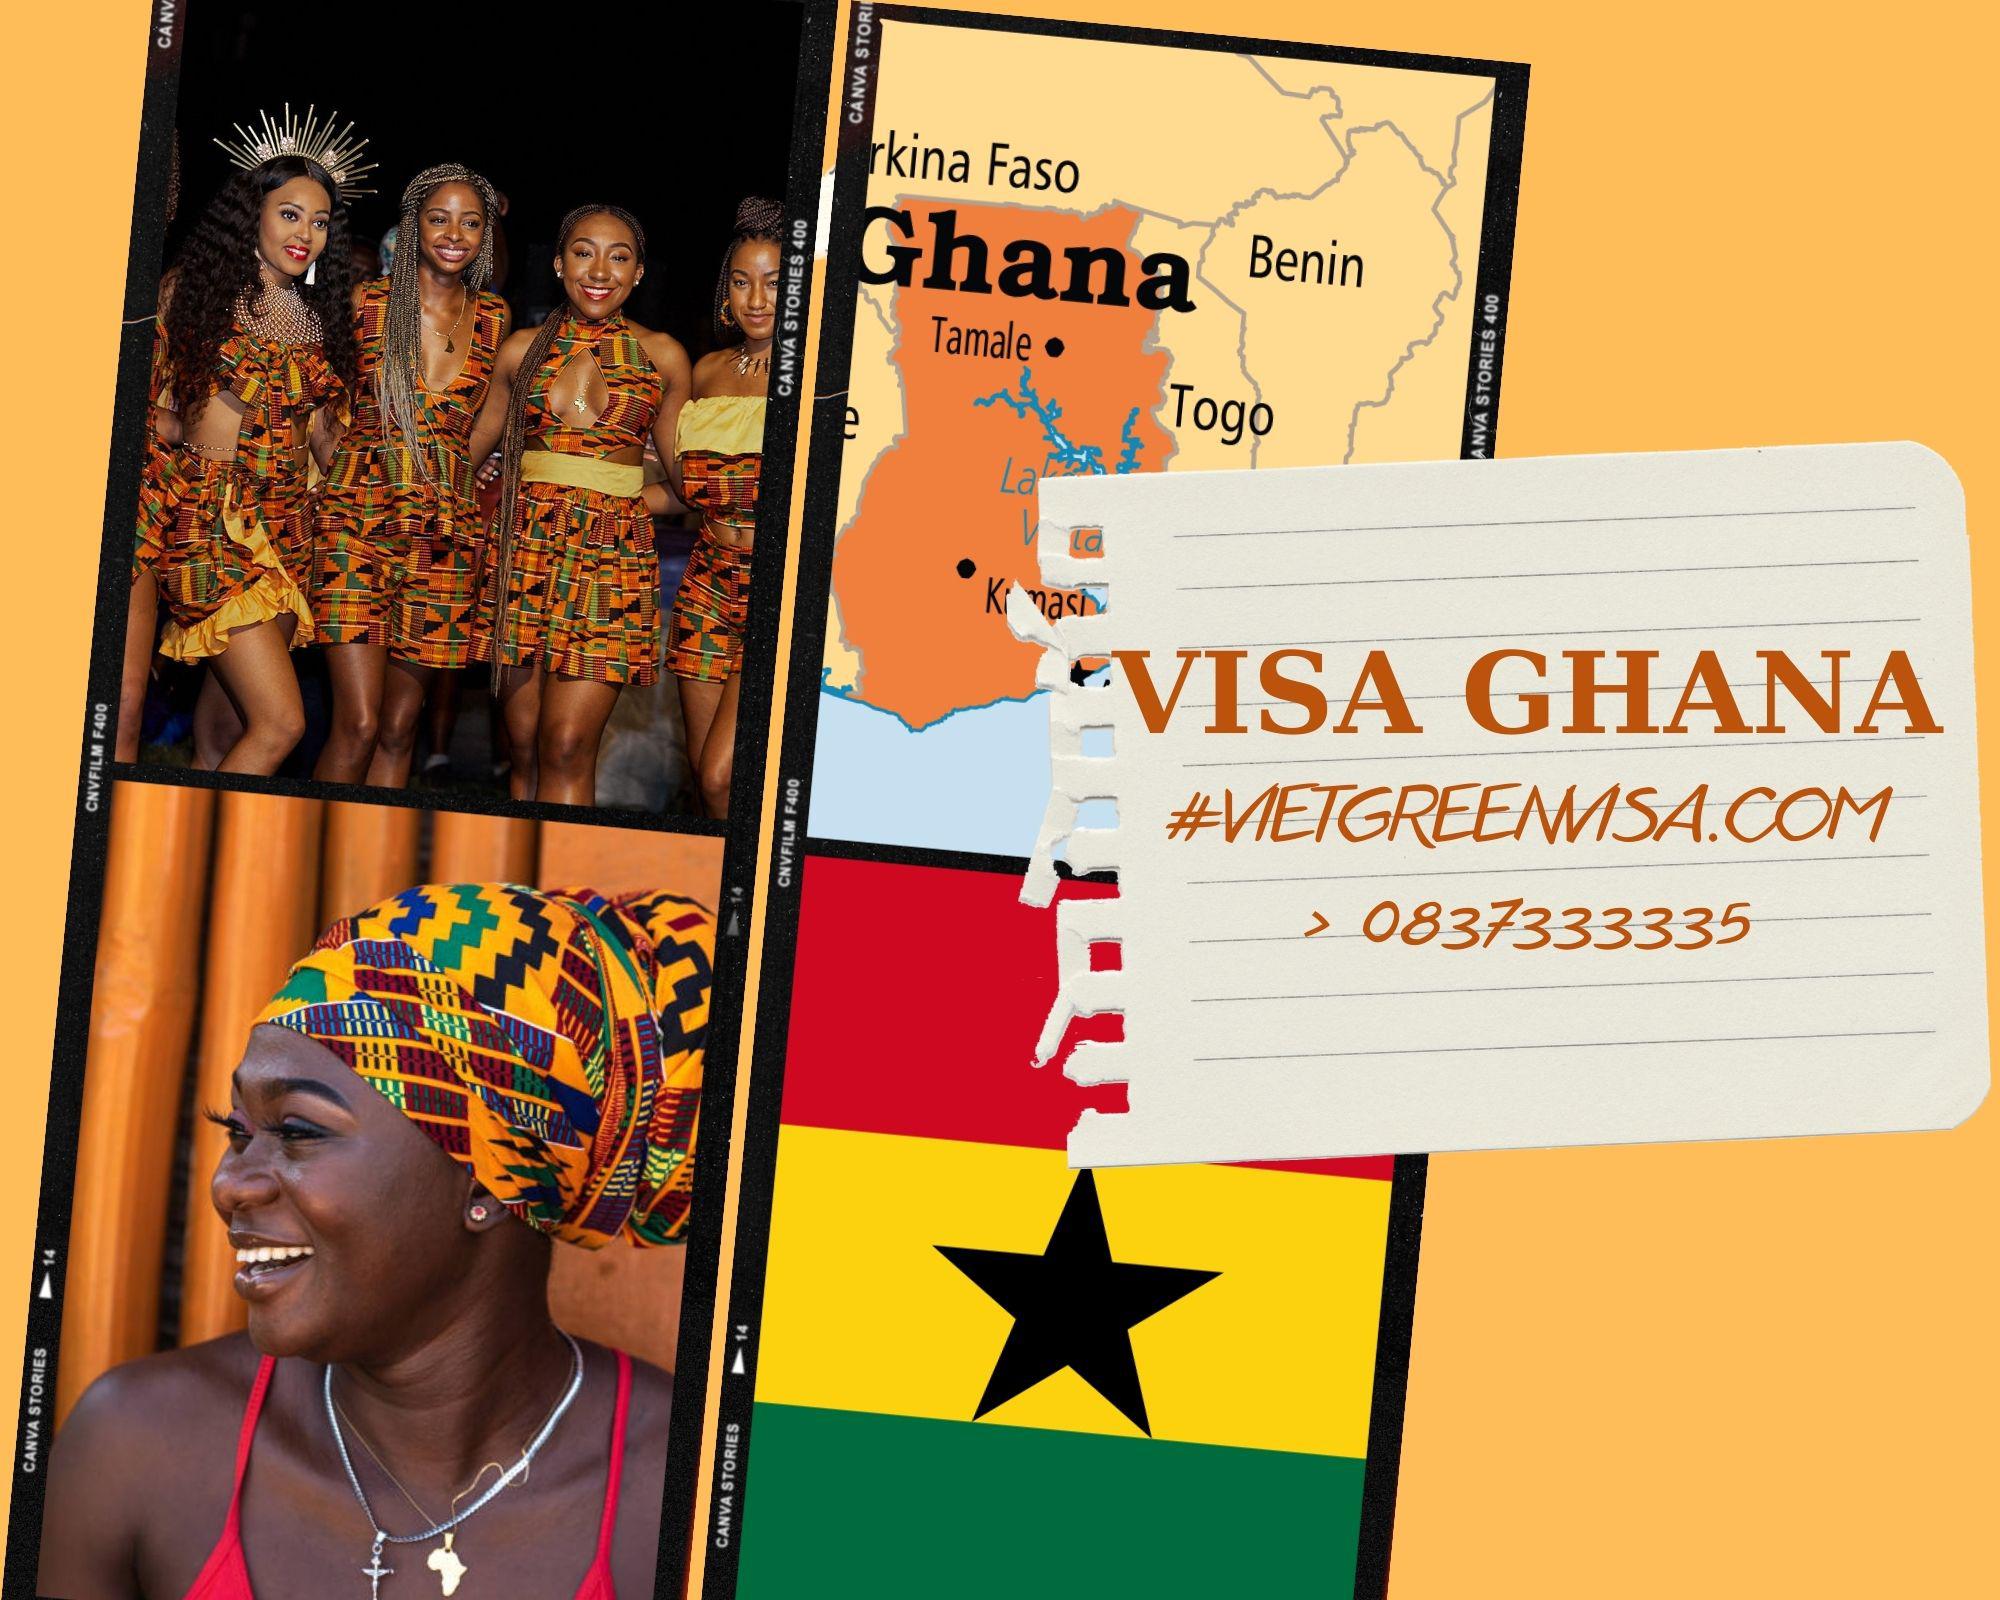 Tư vấn visa Ghana giá rẻ, trọn gói